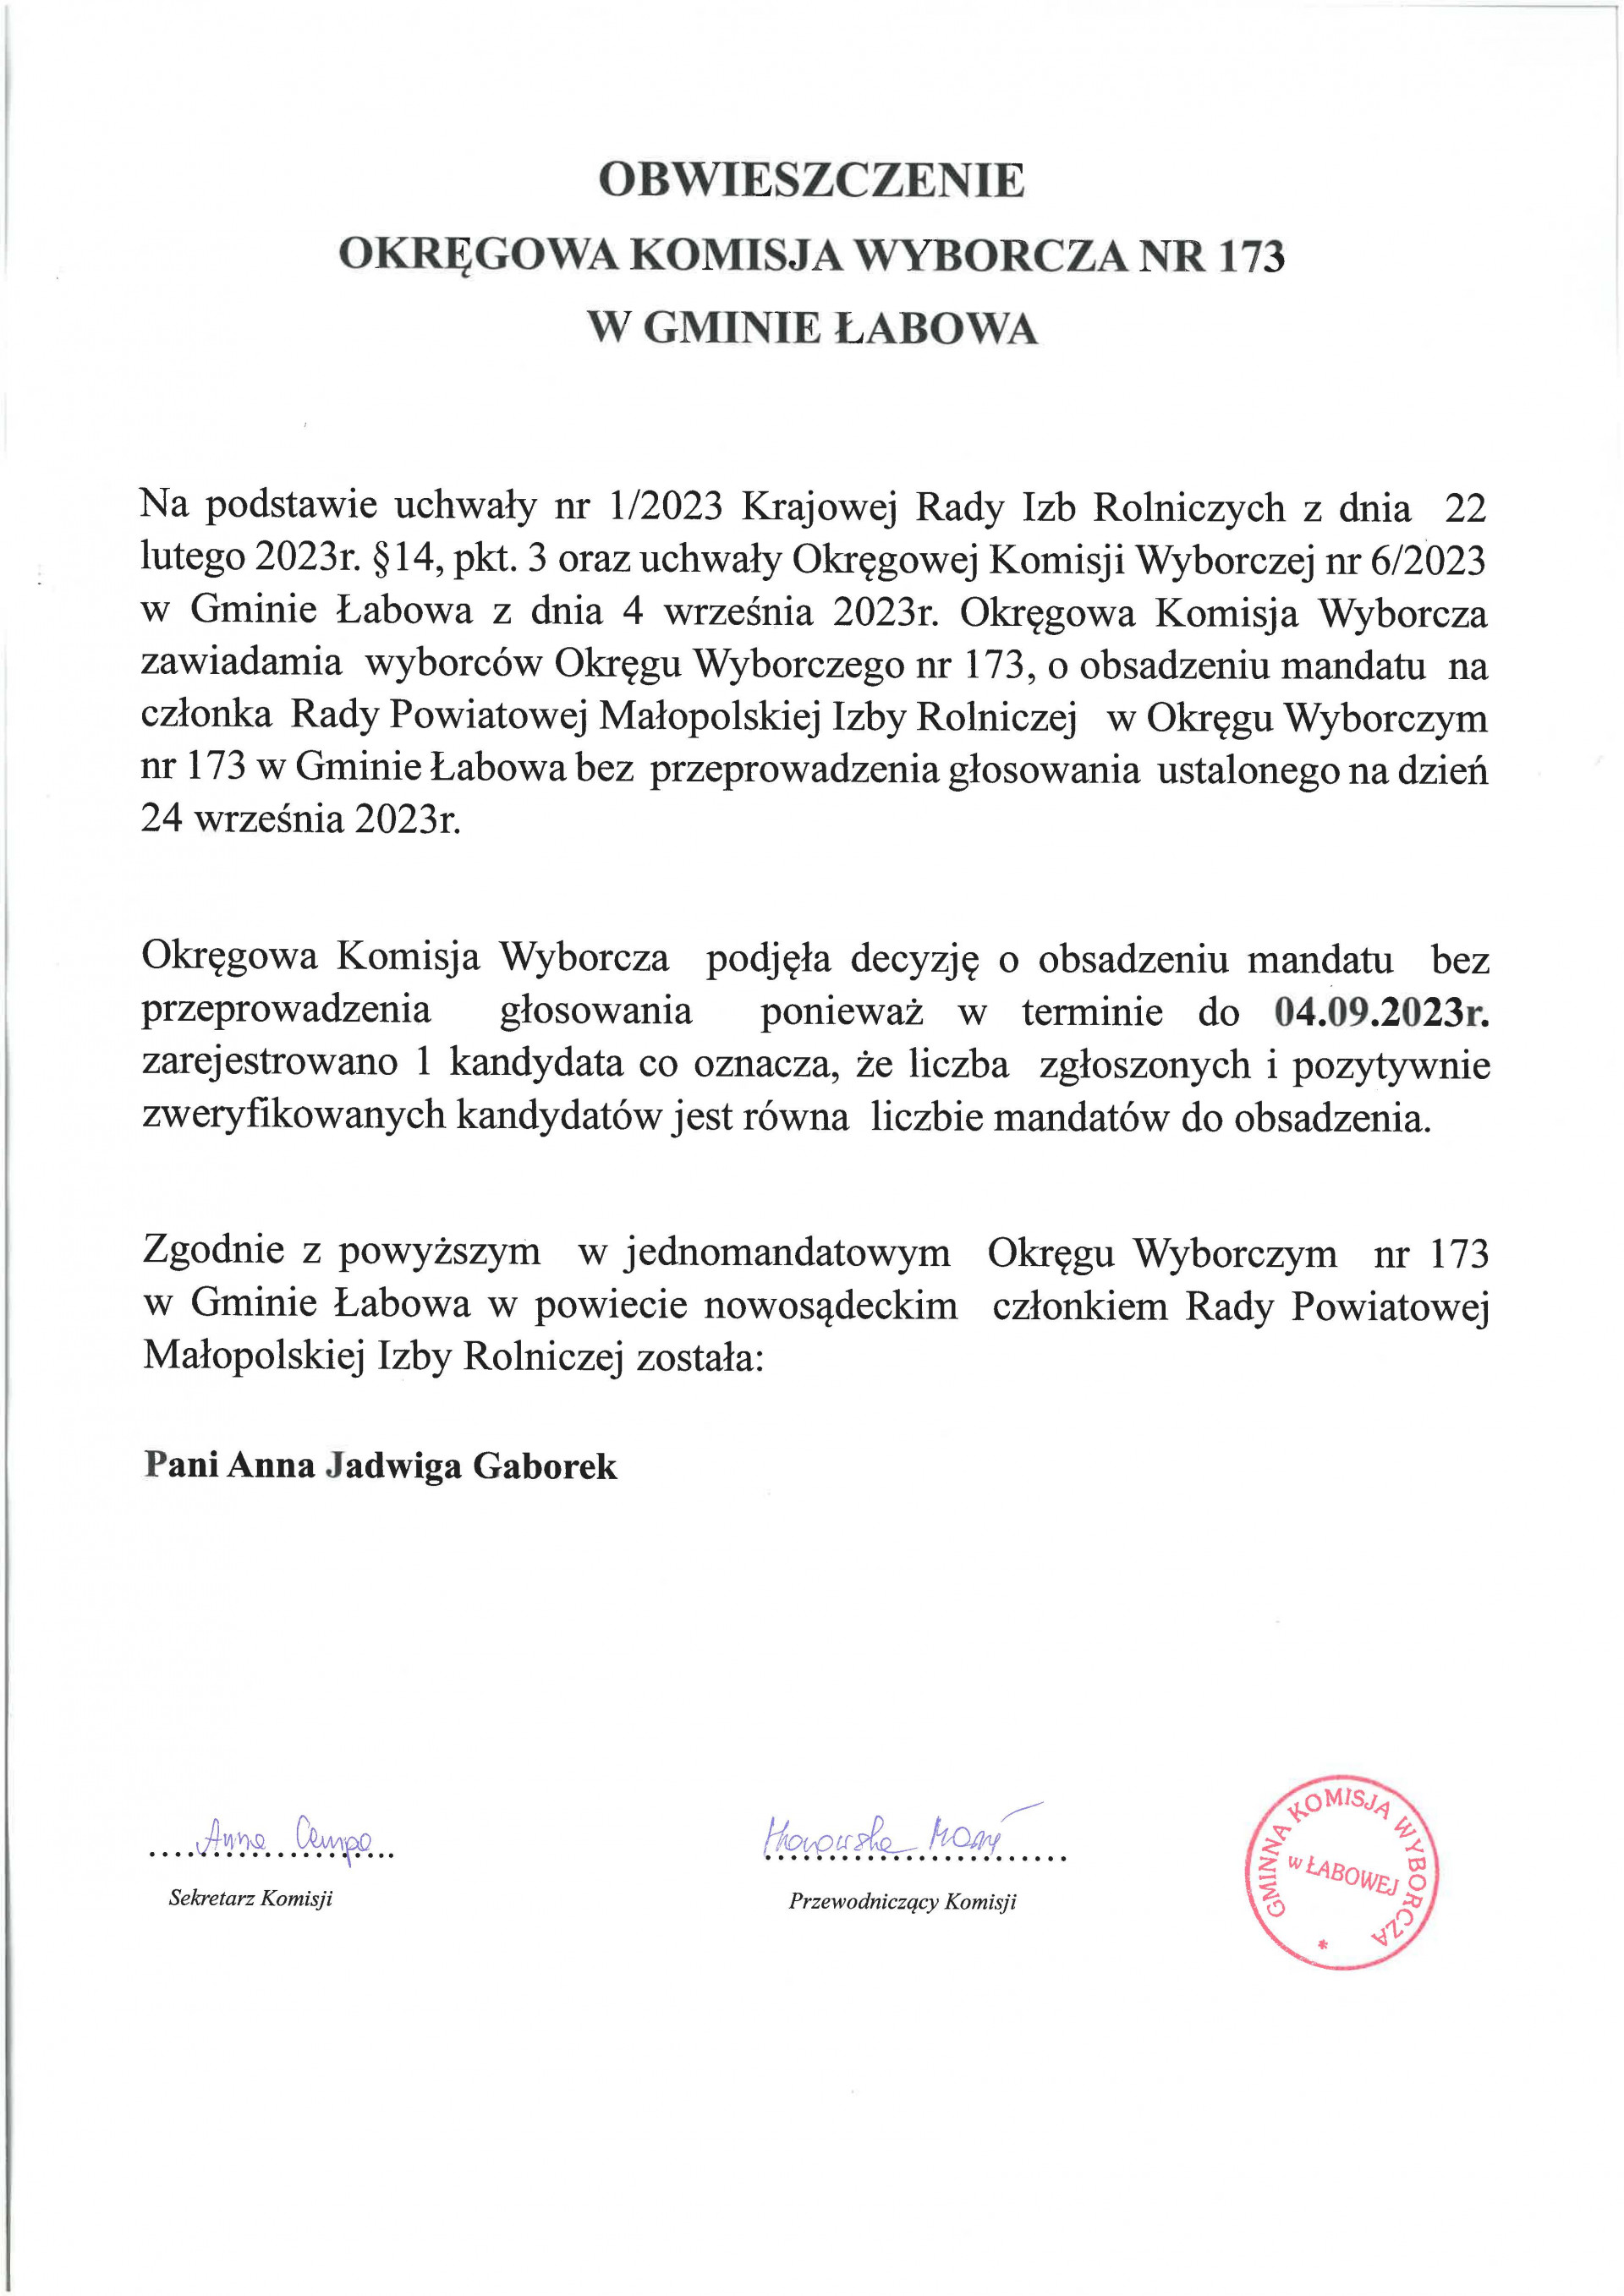 Obwieszczenie Okręgowej Komisji Wyborczej o obsadzeniu mandatu na członka Rady Powiatowej Małopolskiej Izby Rolniczej